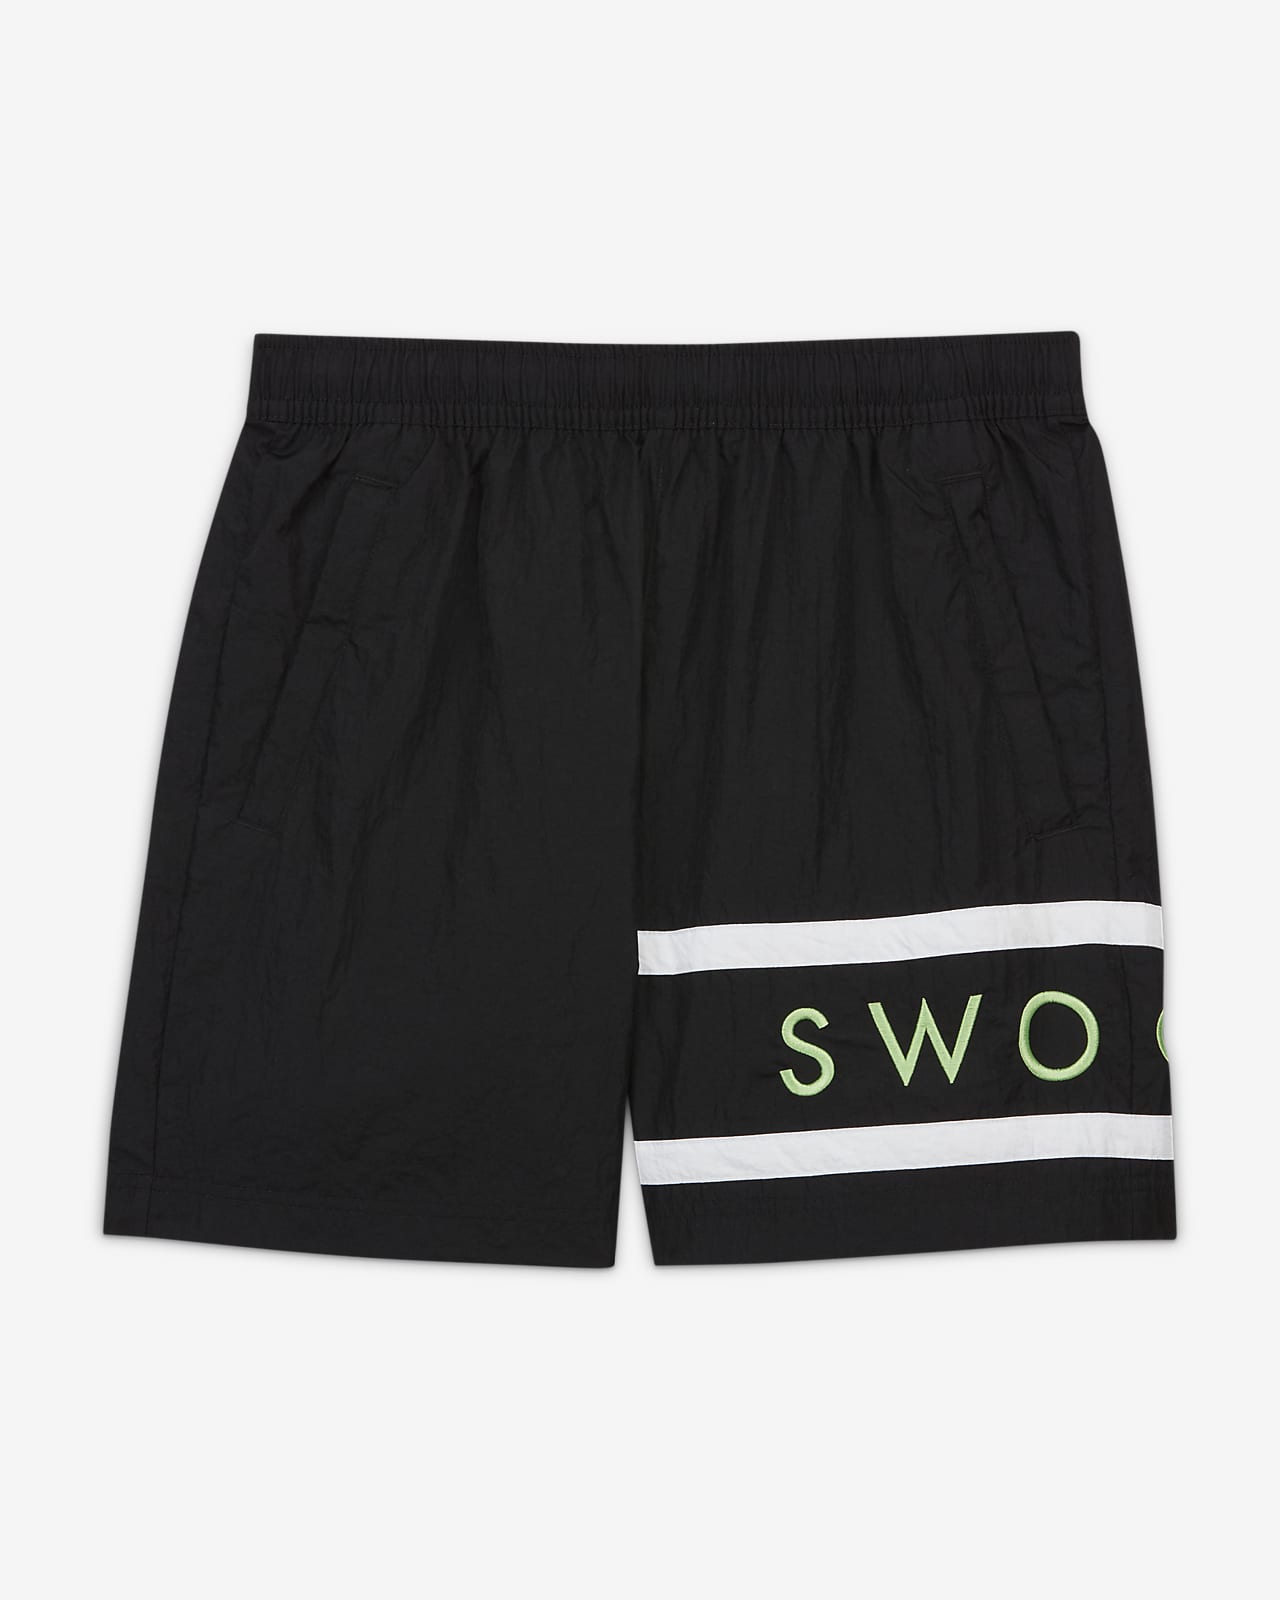 Nike Sportswear Men's Shorts